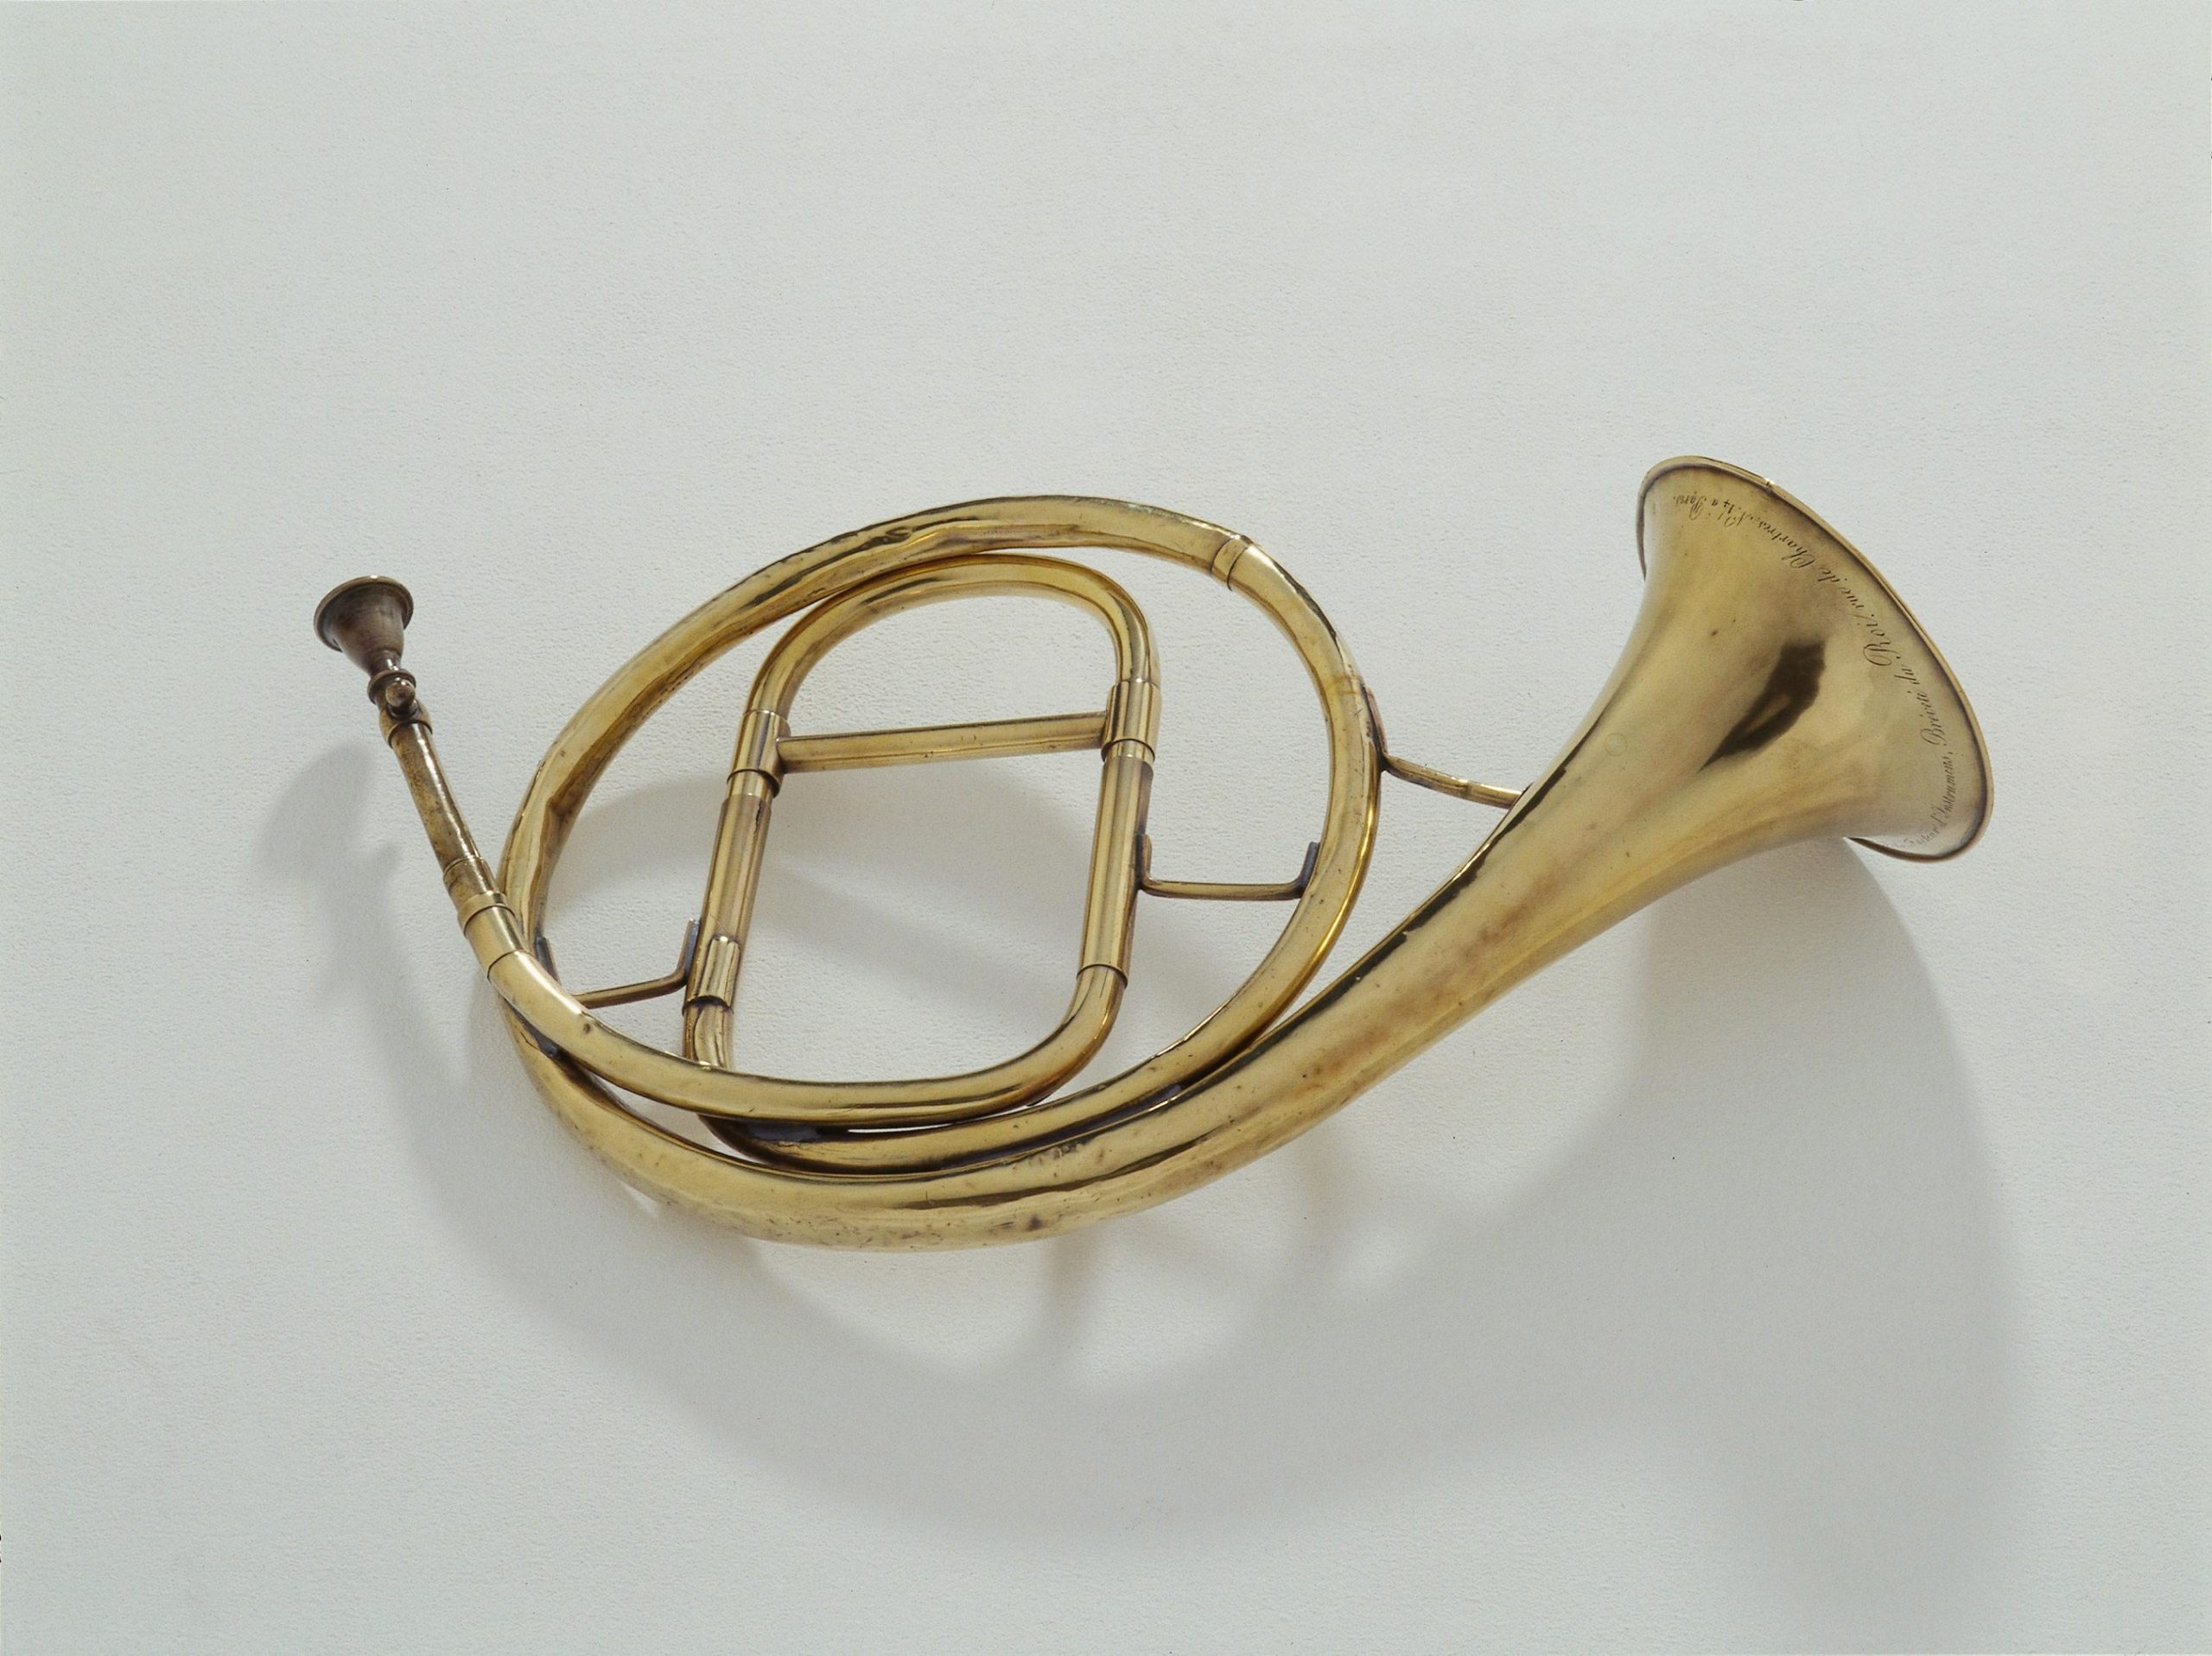 Jacques Christophe Labbaye, Trompette naturelle de forme circulaire, 2ème moitié du XIXème siècle, Musée de la Musique, Paris © Thierry Ollivier